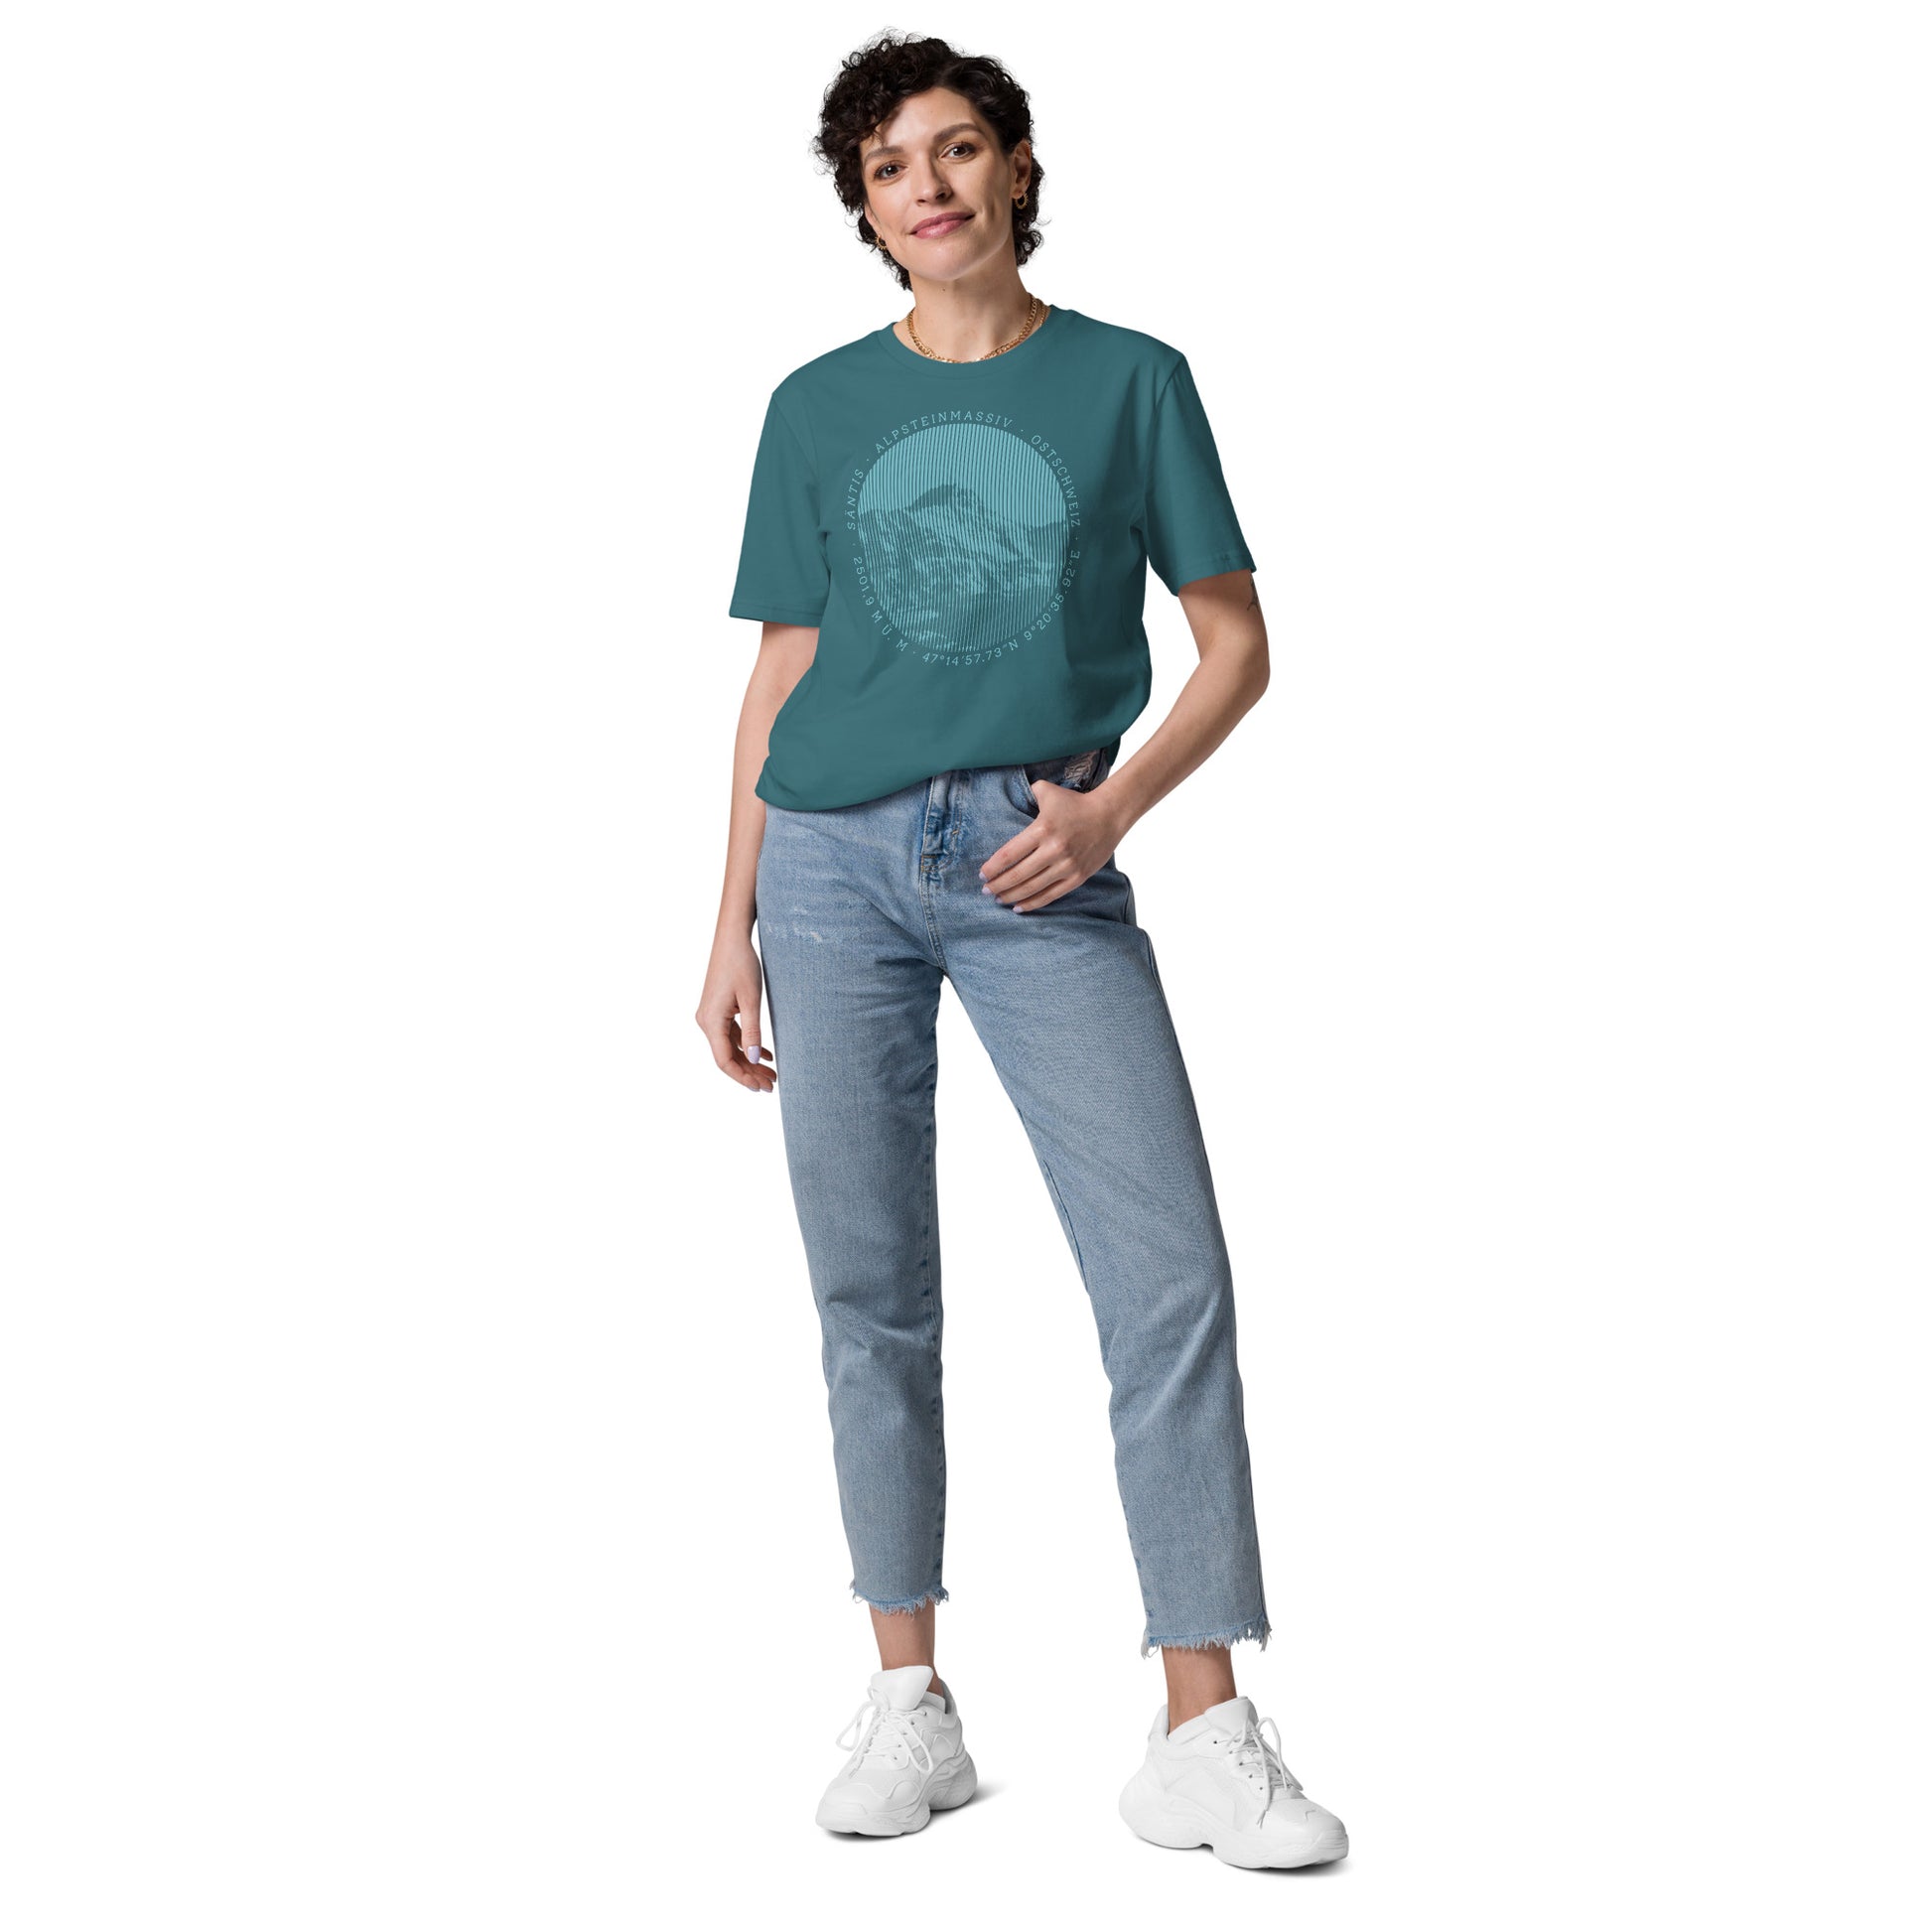 Diese Bergfreundin trägt ein Damen T-Shirt von Vallada in der Farbe Stargazer aus ökologischer Baumwolle mit einem Aufdruck des Säntis-Gipfels. Damit drückt sie ihre Liebe zu den Alpen und dem Alpstein-Gebirge im Besonderen aus.